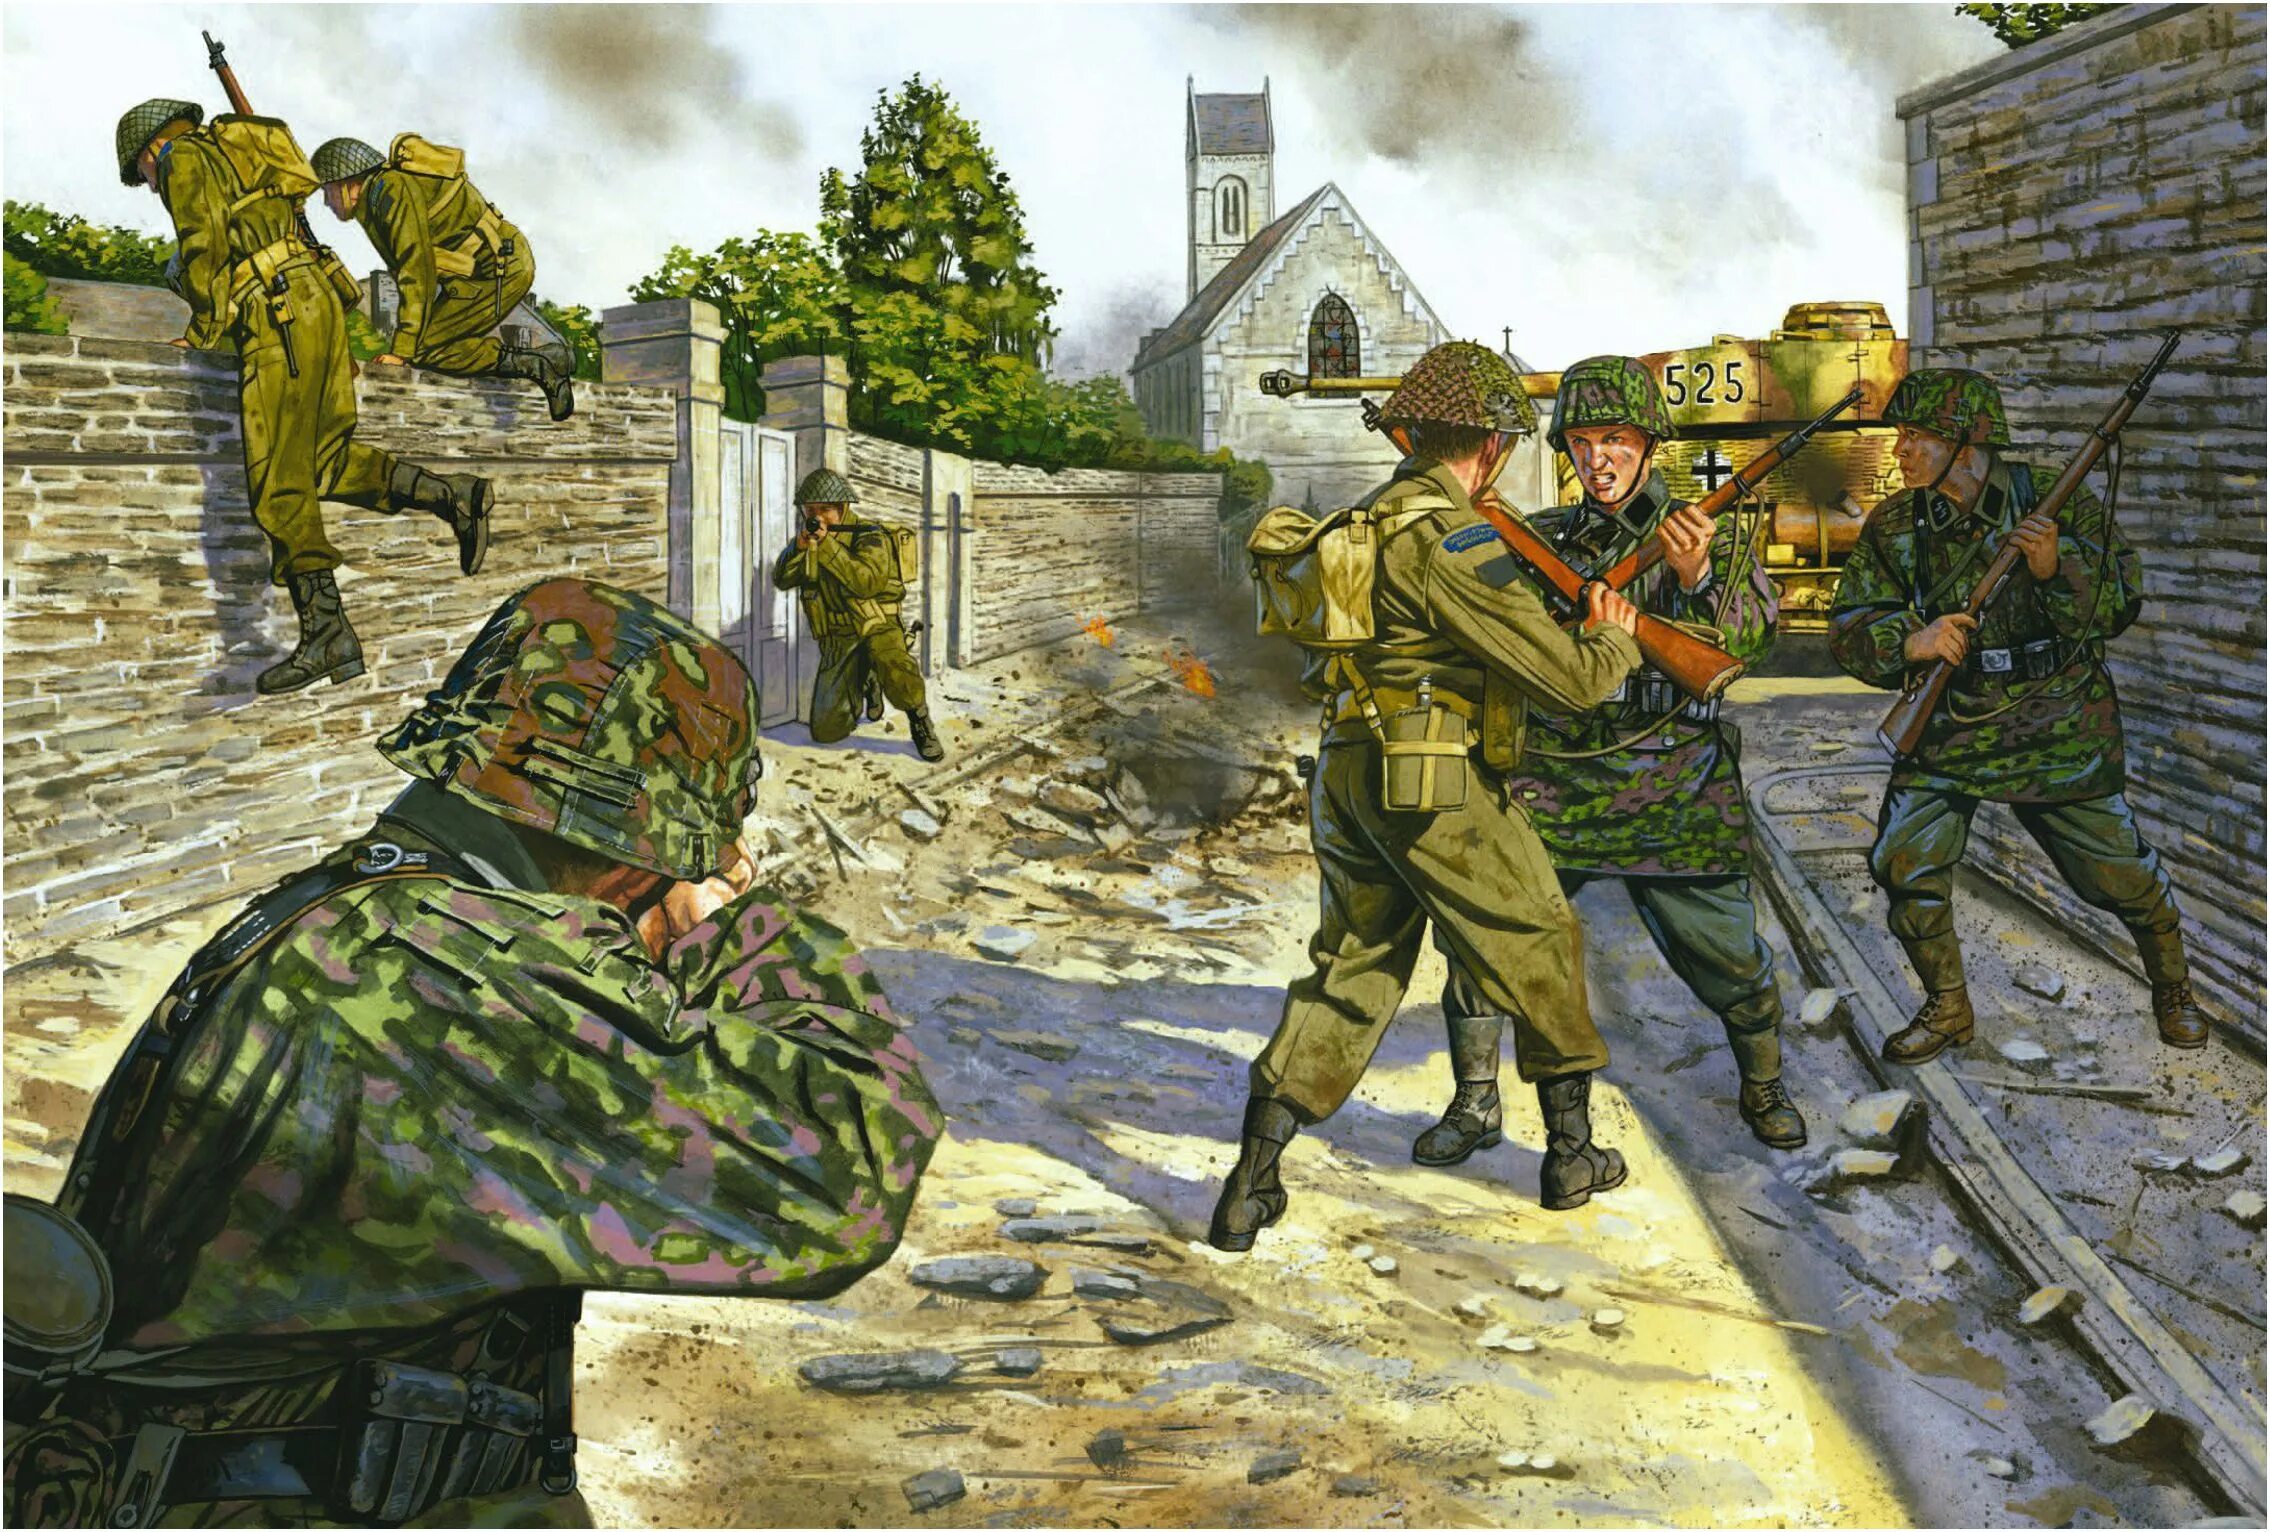 Немцы Нормандия 1944 арт. Фольксштурм солдаты ВМВ арт. Вермахт против сс